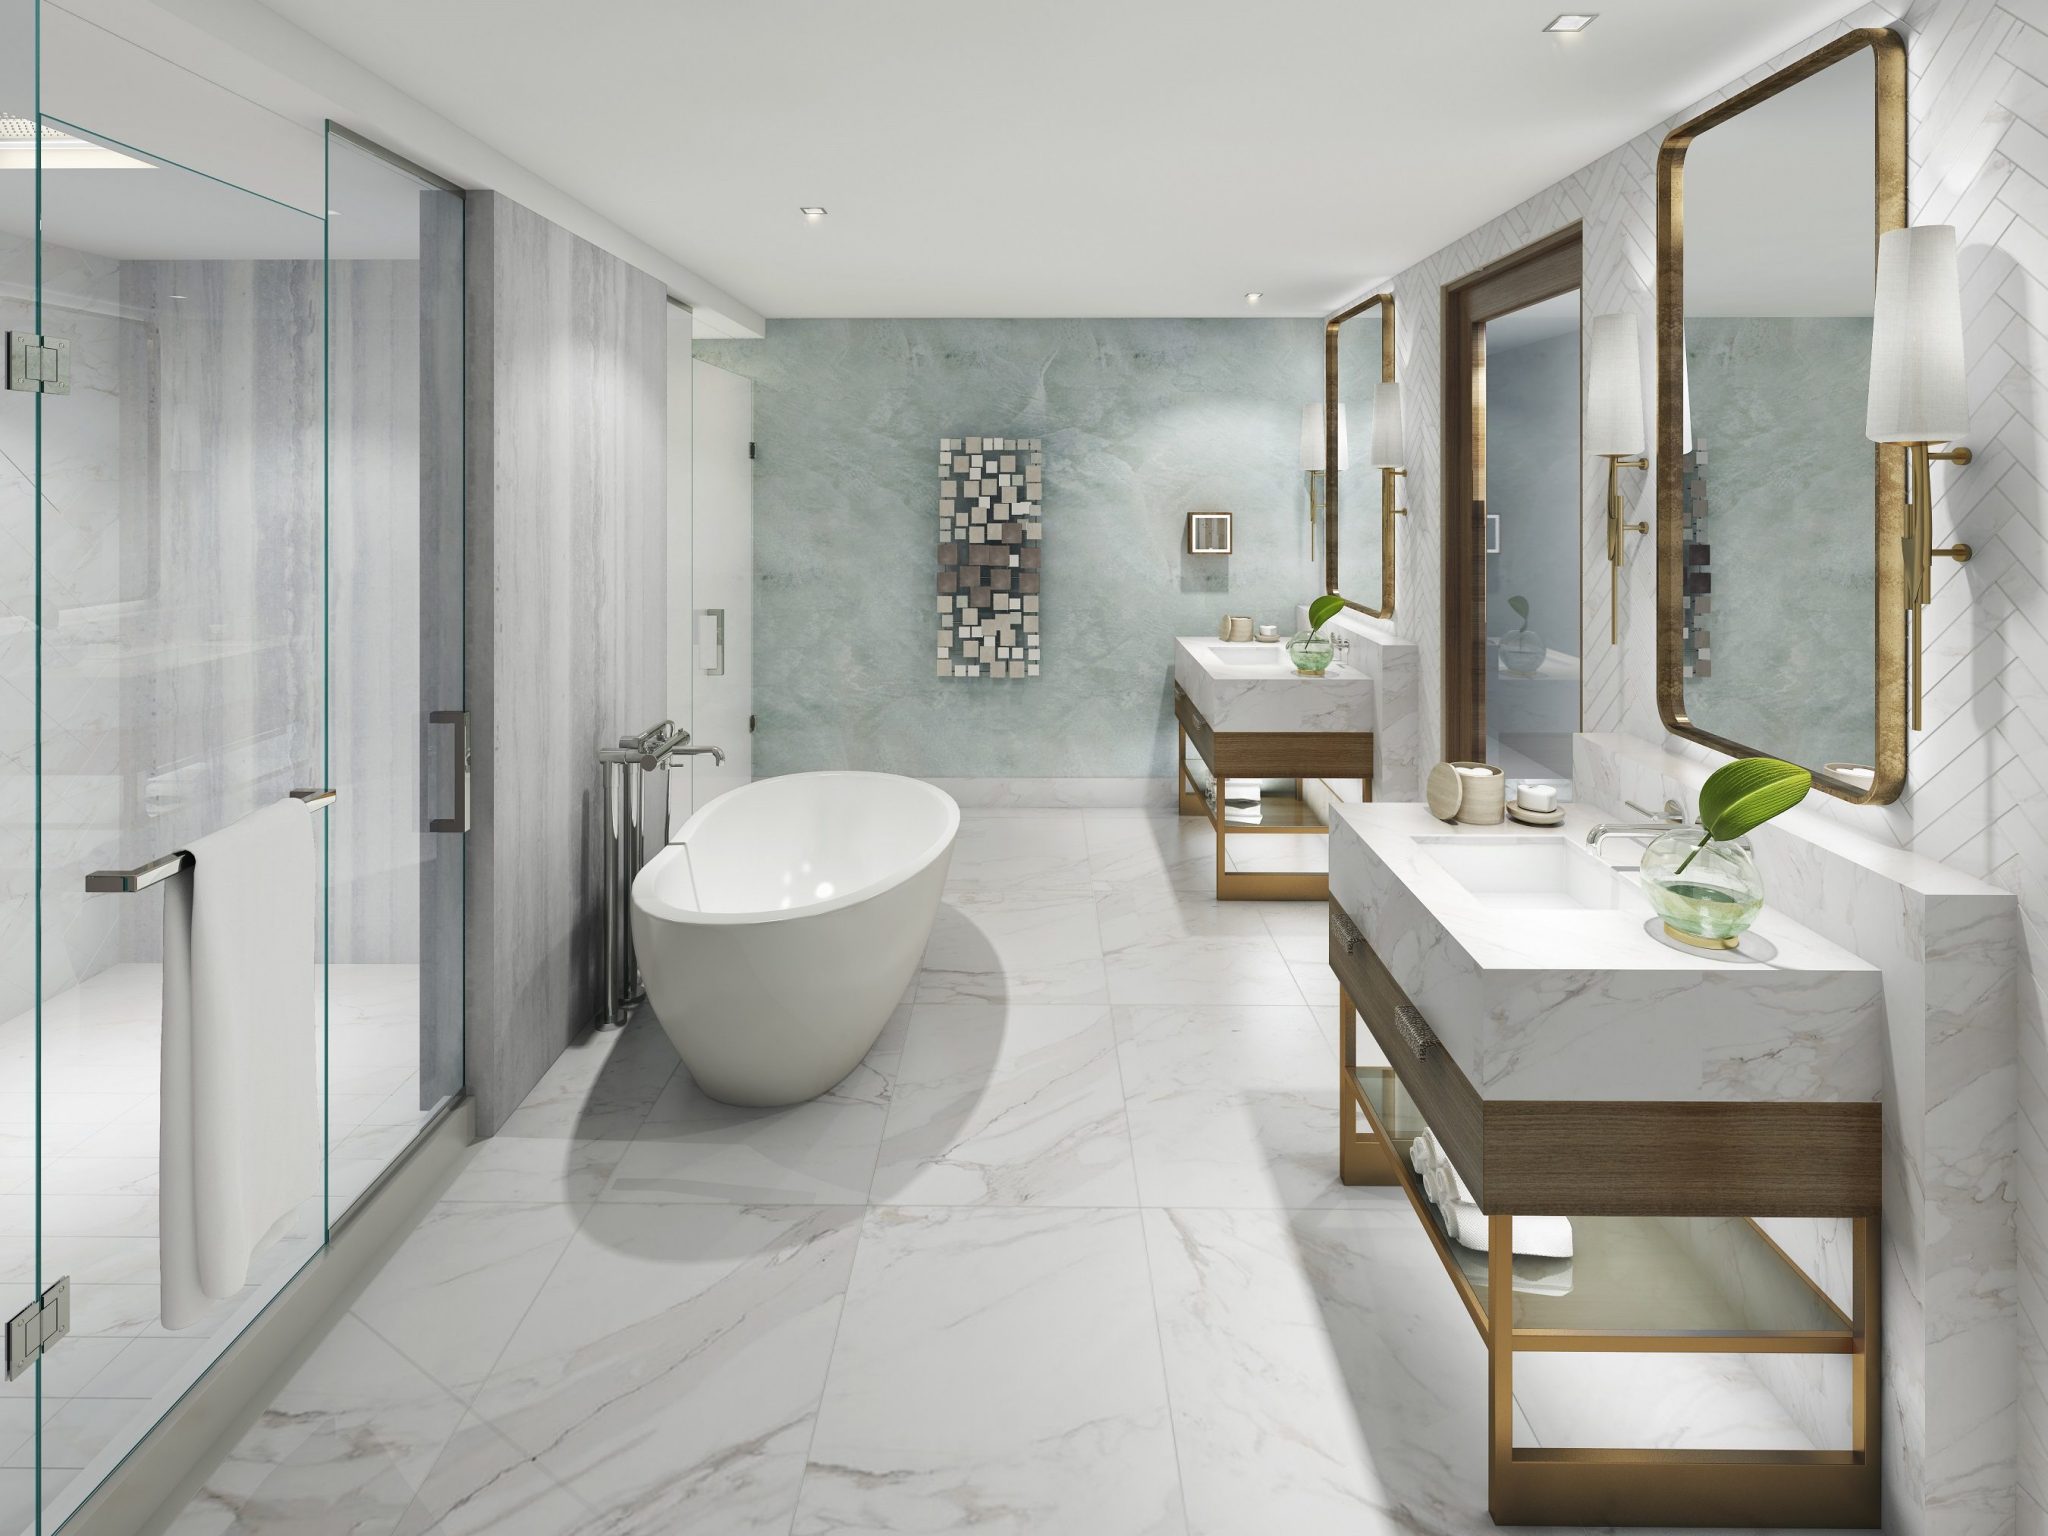 Te is becsempészheted otthonodba a Ritz-Carlton Szállodák mesés fürdőszobáinak hangulatát!